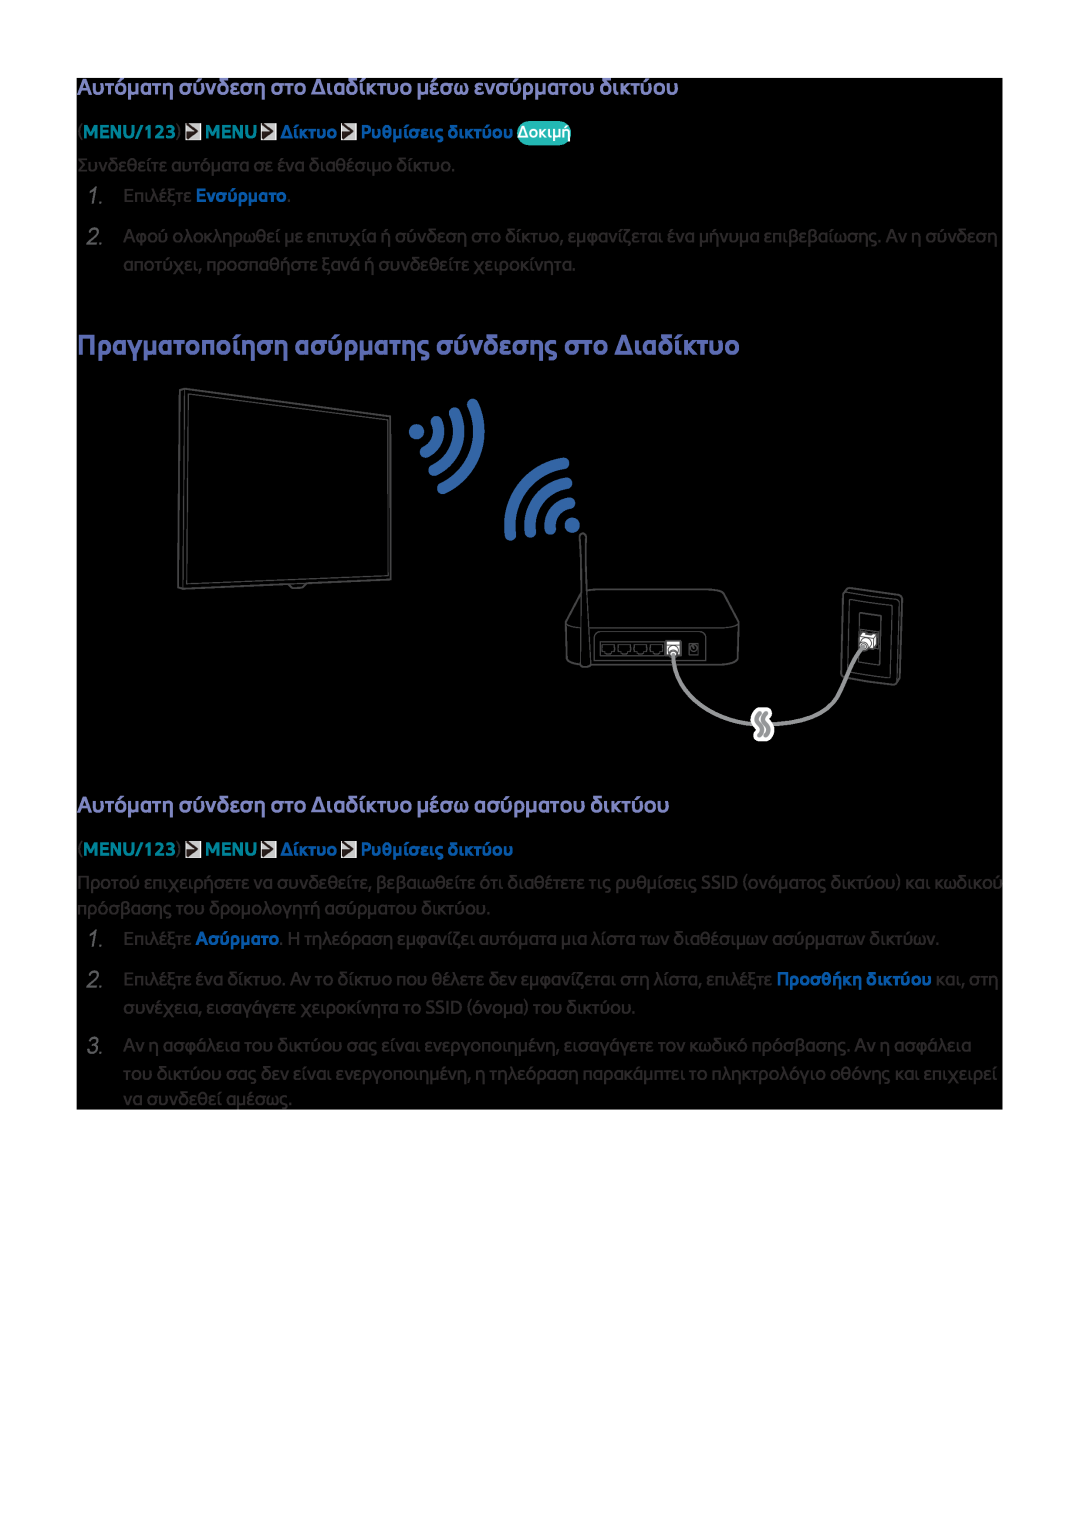 Samsung UE50J6240AWXXH Πραγματοποίηση ασύρματης σύνδεσης στο Διαδίκτυο, MENU/123 MENU Δίκτυο Ρυθμίσεις δικτύου Δοκιμή 